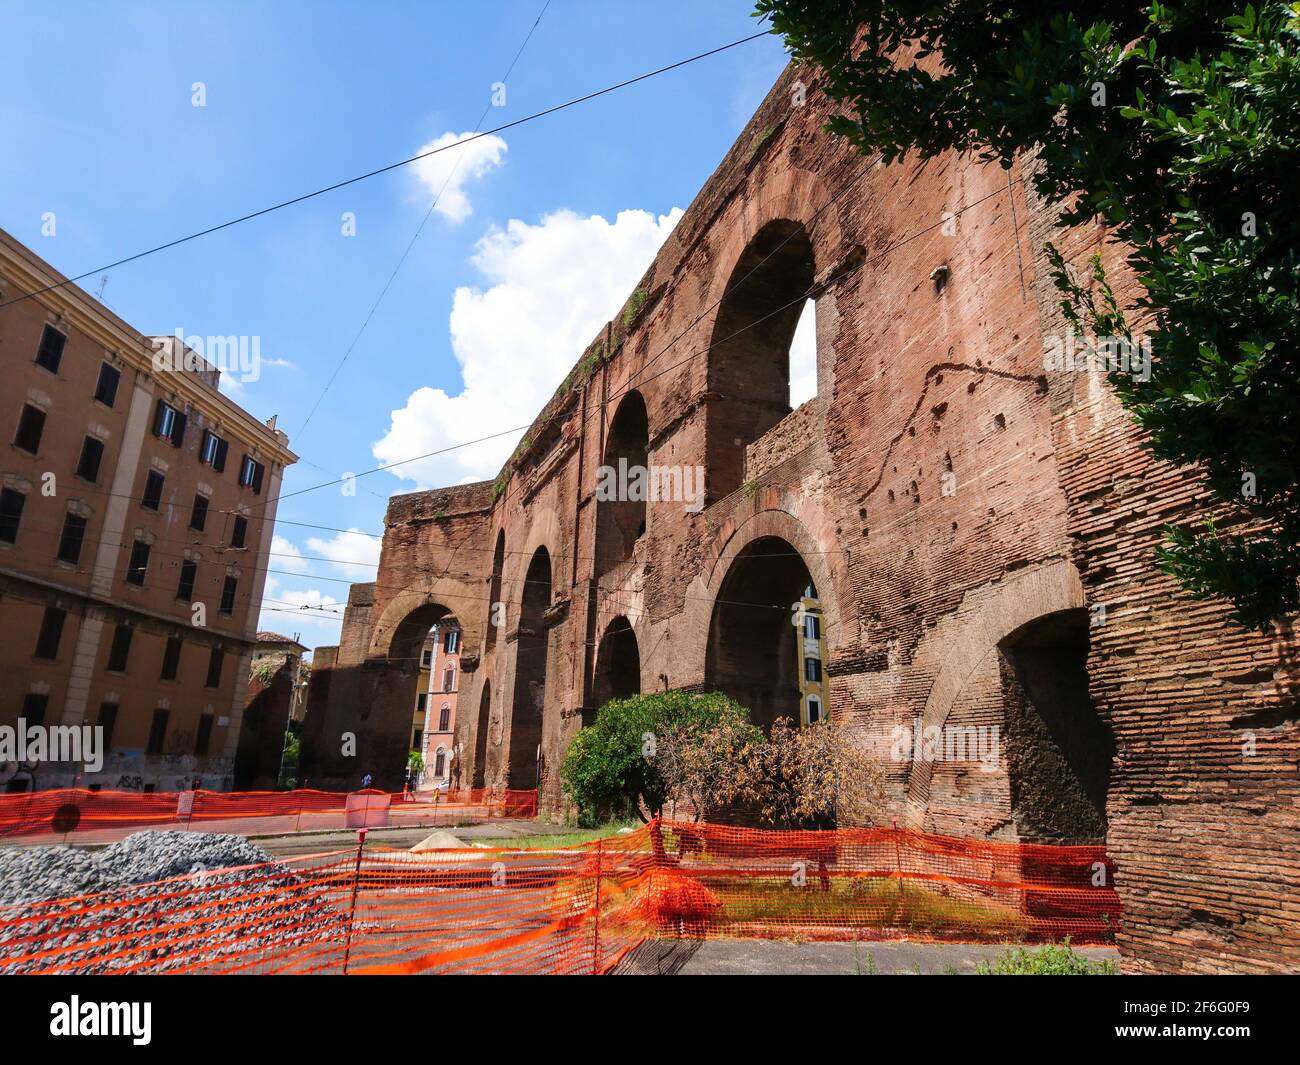 Zwei Aquädukte werden in der Nähe des größeren Tores oder der Porta Maggiore rekonstruiert. Die Stadtmauer Roms aus dem 3. Jahrhundert. Rom historische Sehenswürdigkeiten, Italien Stockfoto